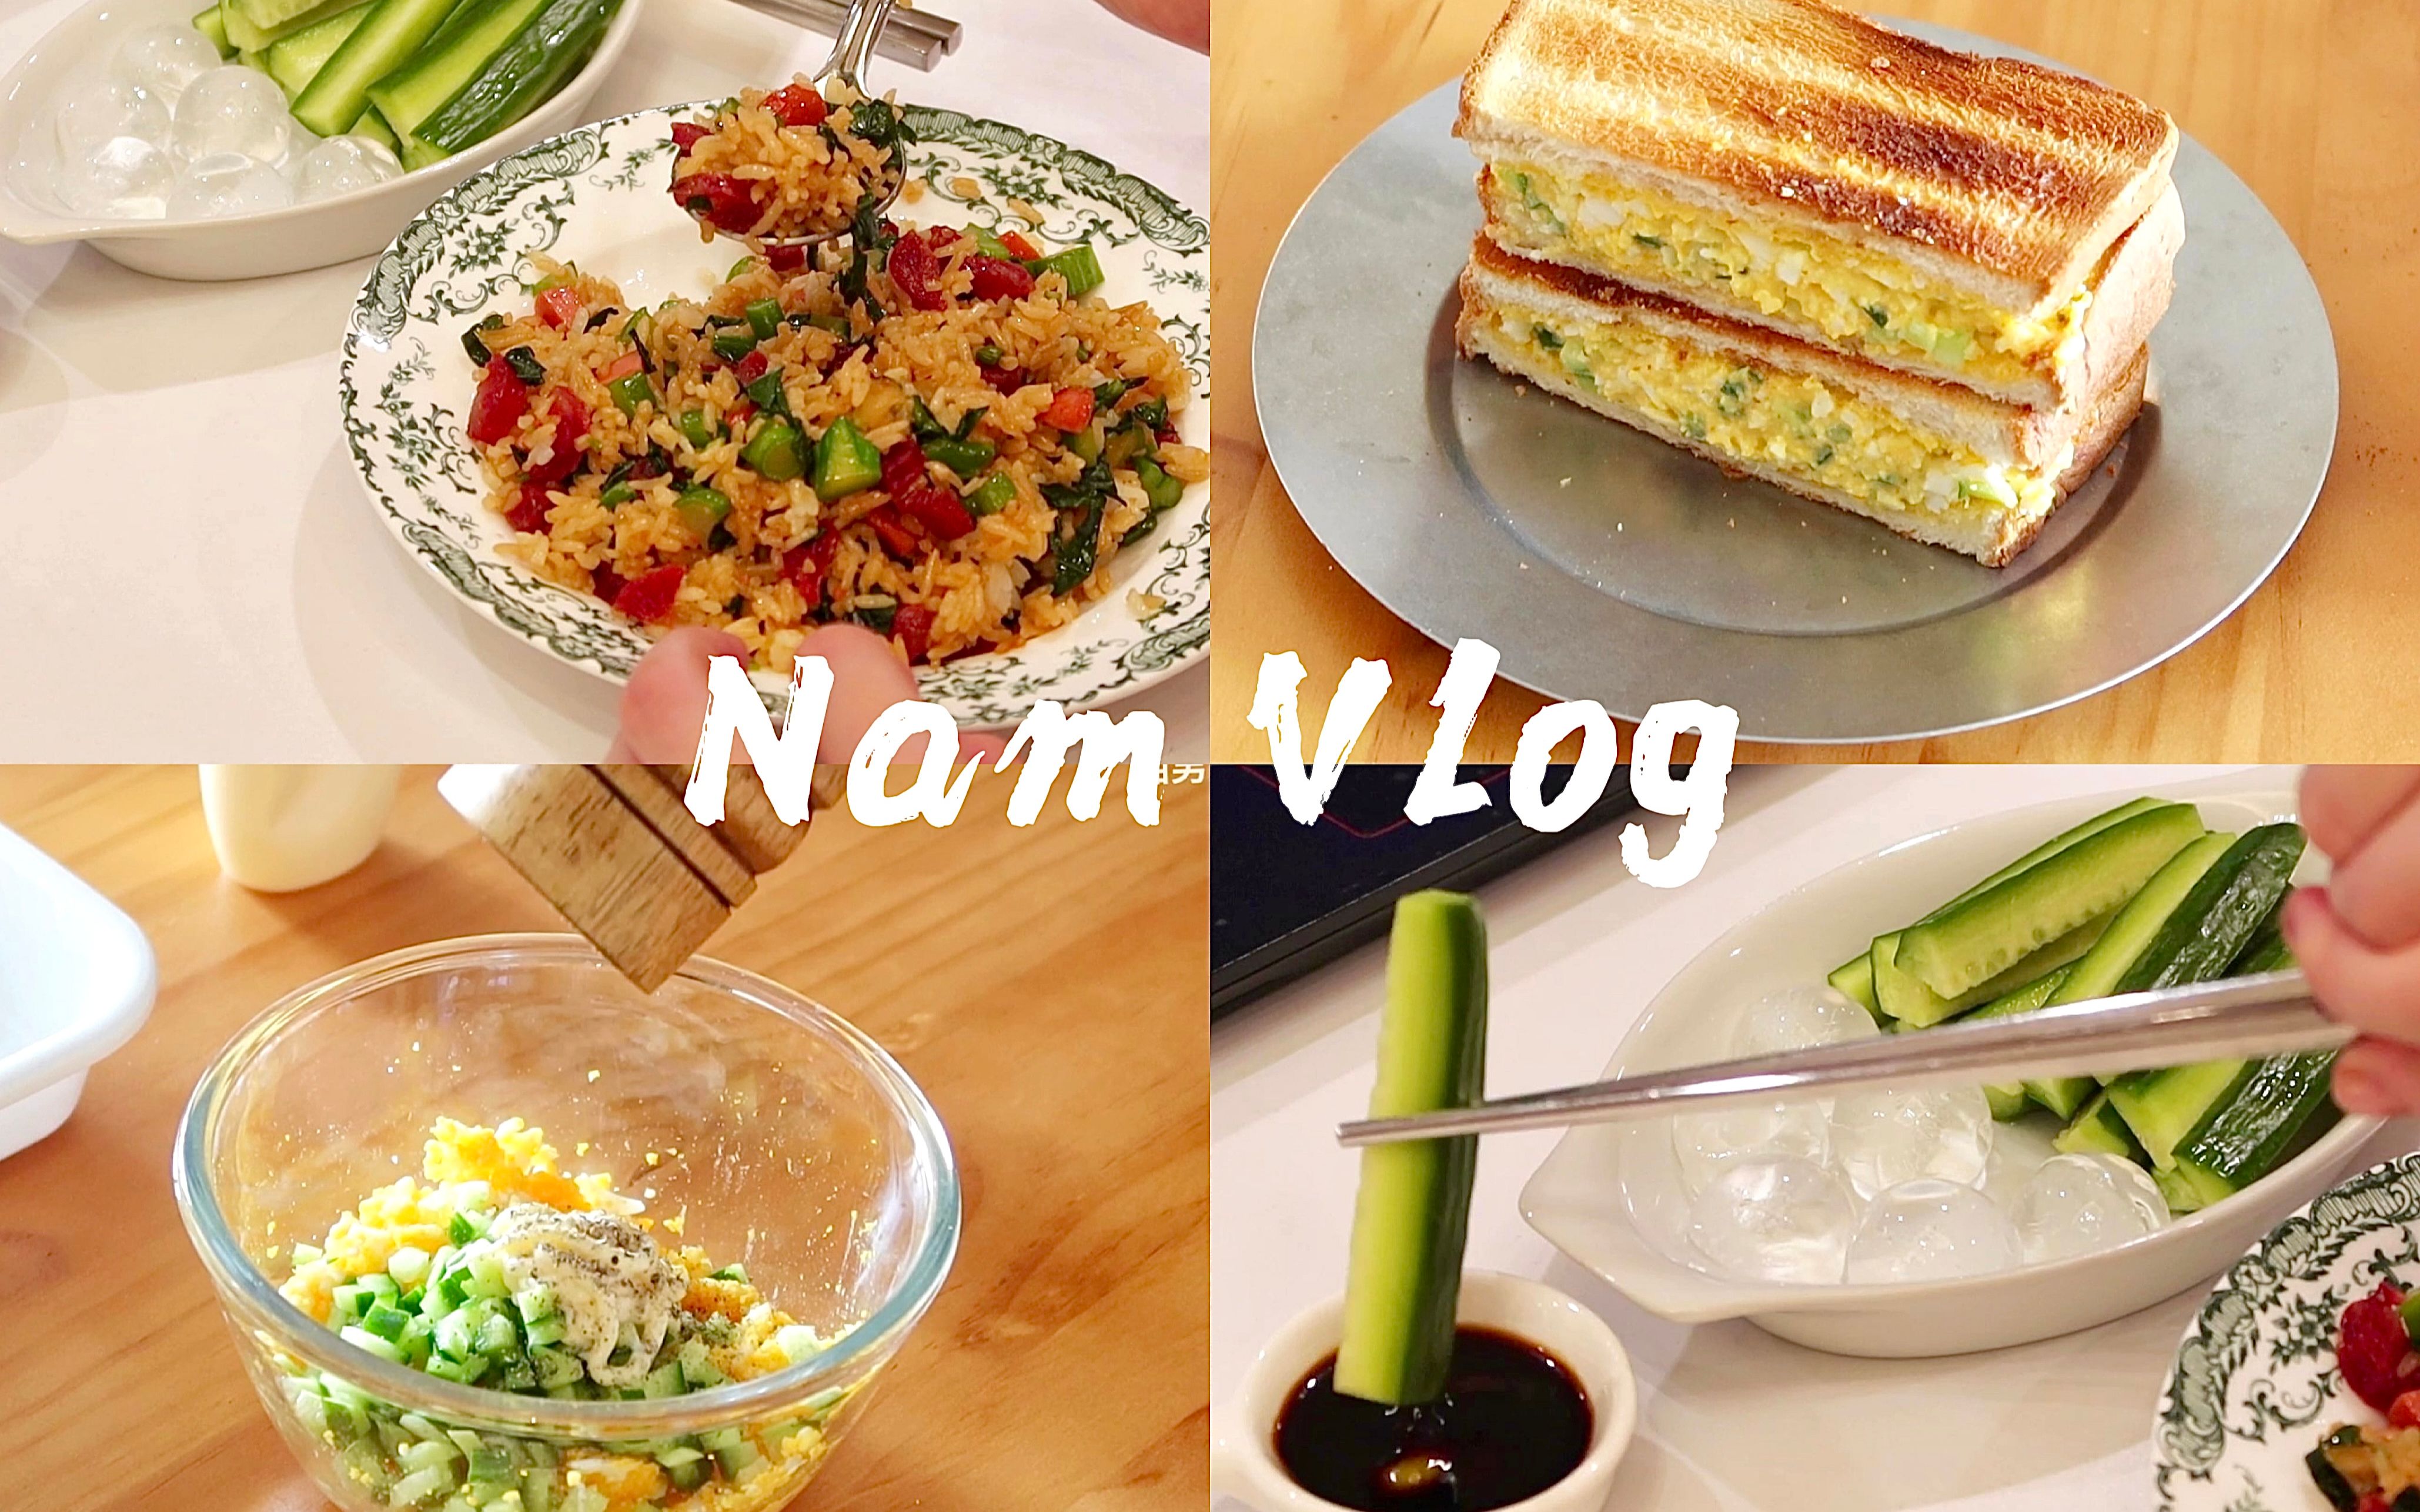 Nam Vlog09丨独居治愈饮食·腊肠青菜炒饭·鸡蛋酱三明治·上头的芥末青瓜·冰拿铁·手榨柠檬水·干饭日常